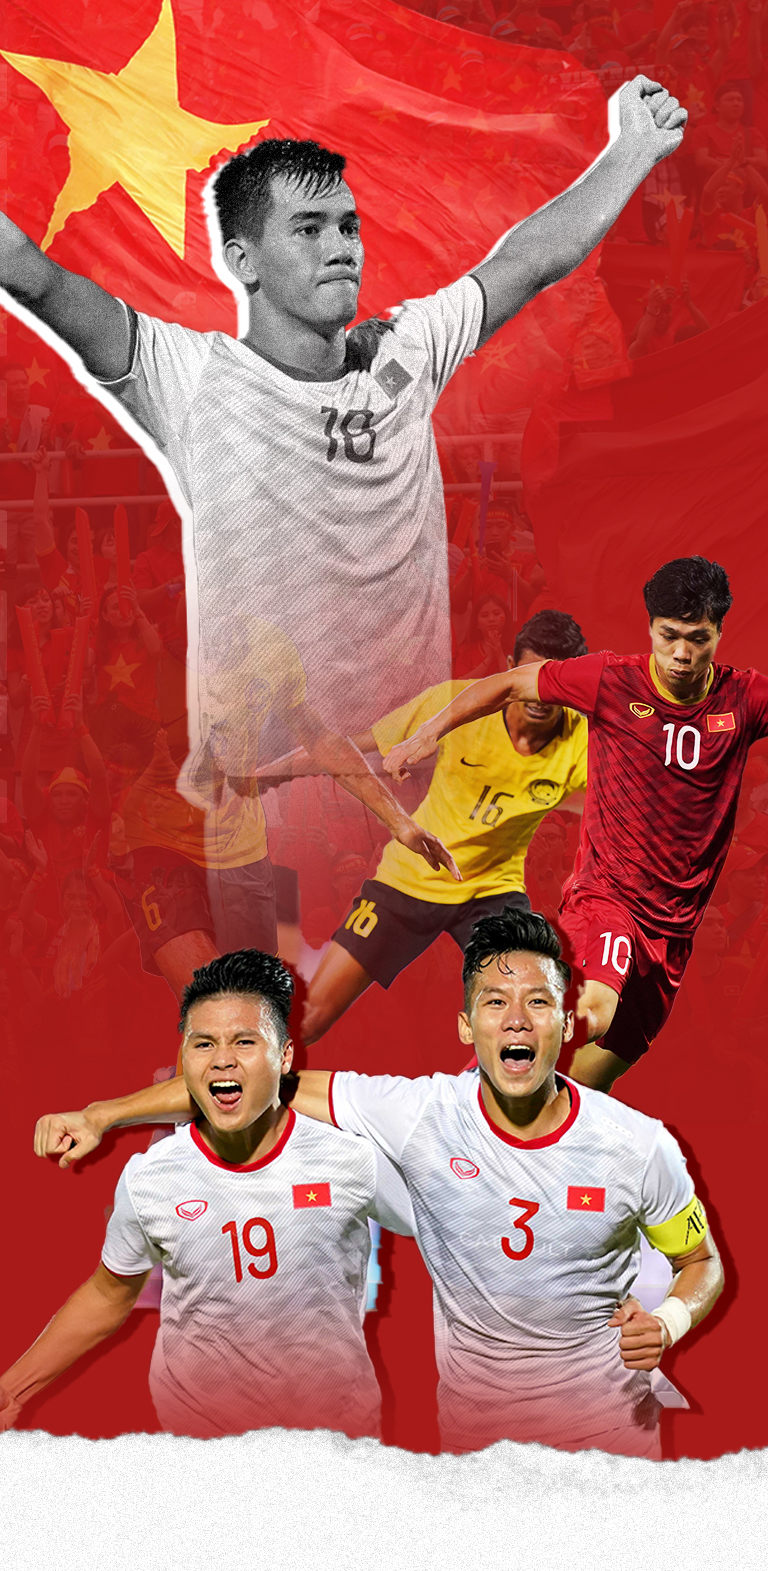 Vòng loại World Cup: Xem hình ảnh vòng loại World Cup và cùng theo dõi những trận đấu đầy kịch tính và hấp dẫn. Hãy cùng đội tuyển Việt Nam giành được một vị trí trong giải đấu hấp dẫn nhất thế giới này. Sự háo hức về trận đấu chắc chắn sẽ khiến bạn phải xem một lần nữa.